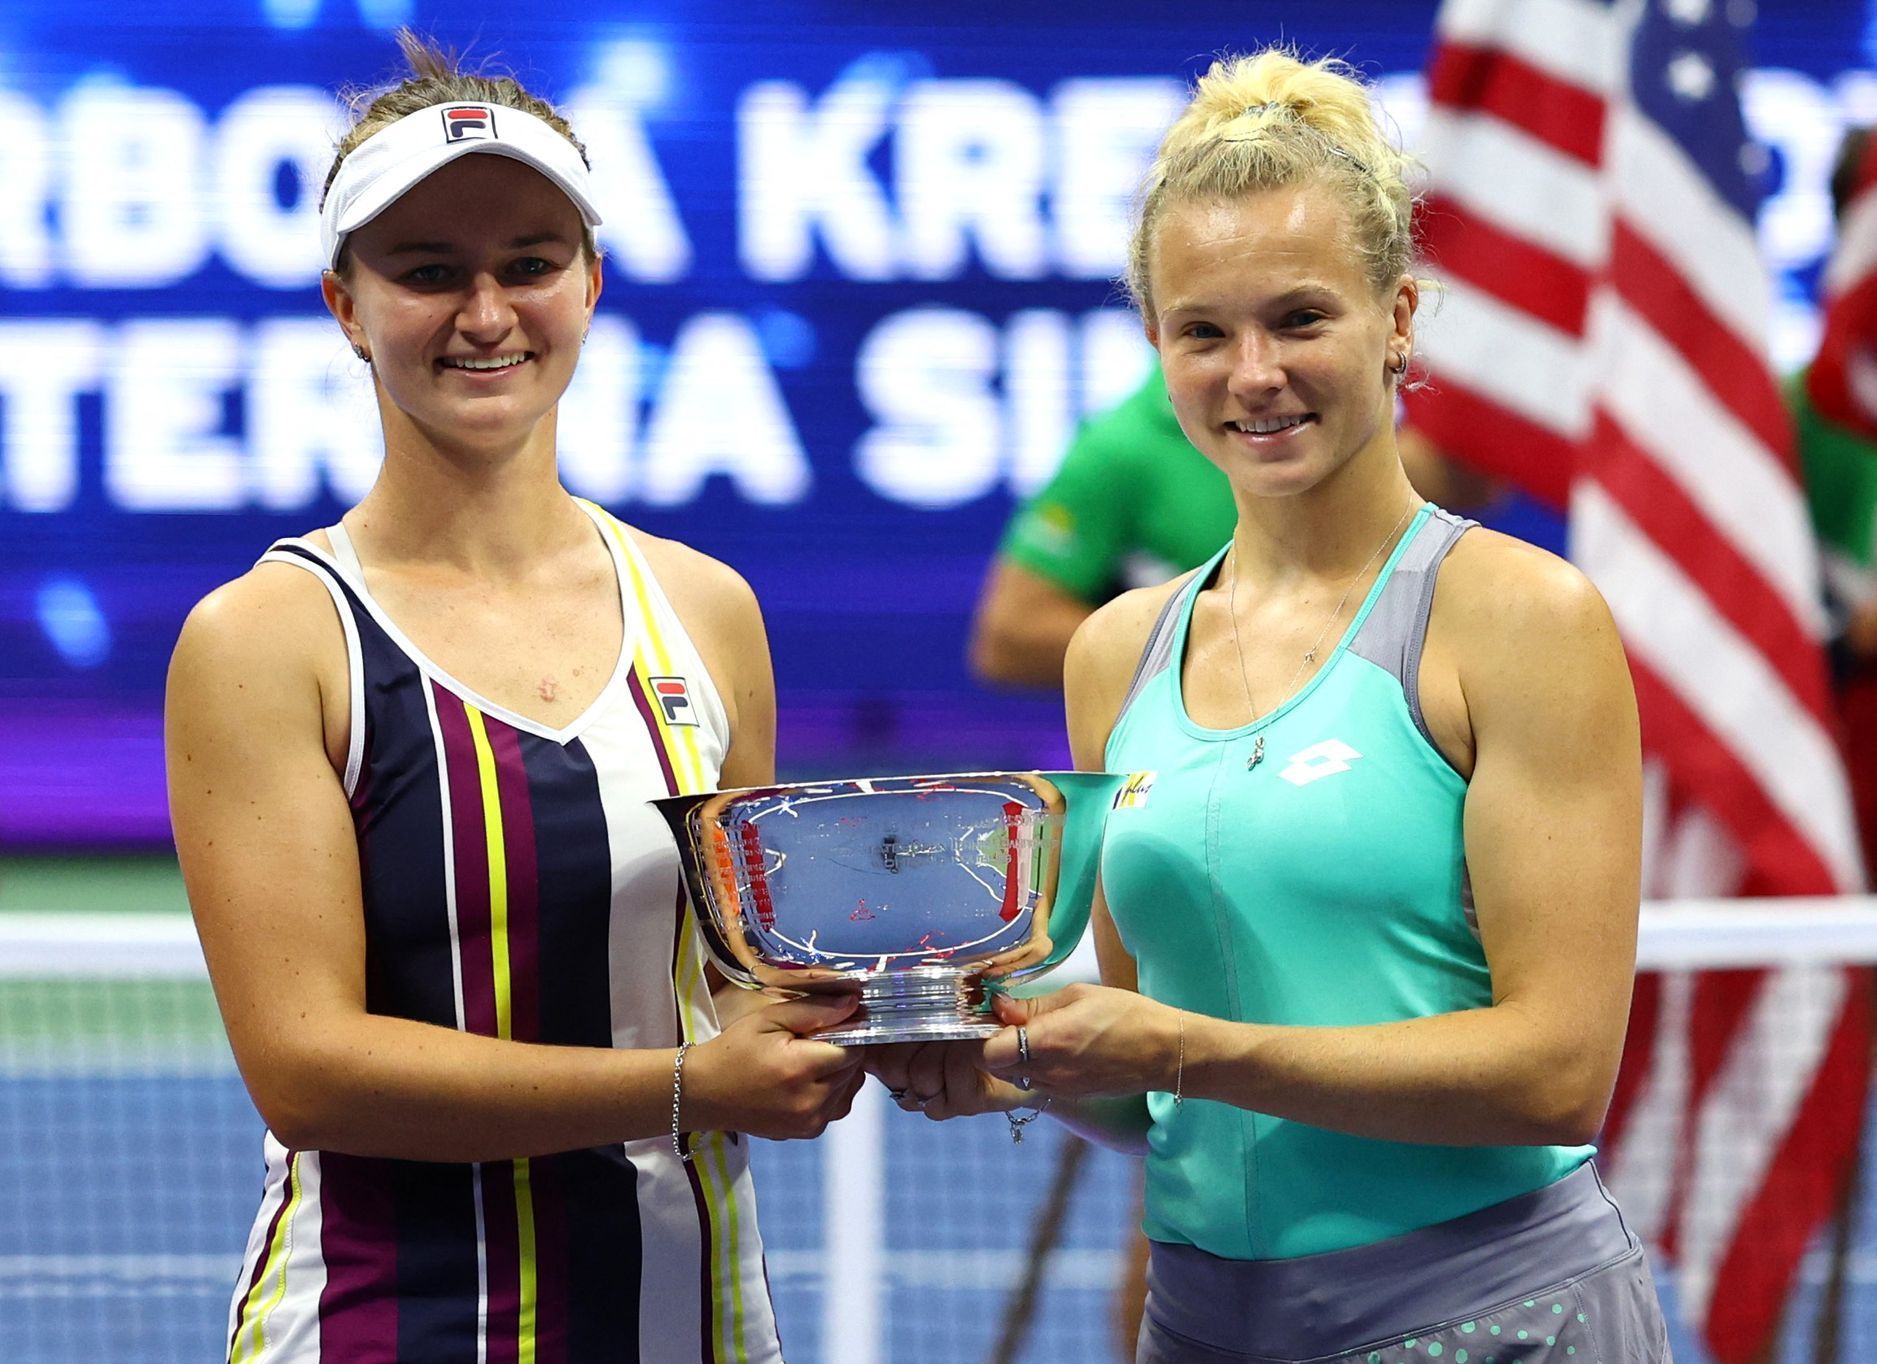 Barbora Krejčíková a Kateřina Siniaková slaví triumf na US Open 2022